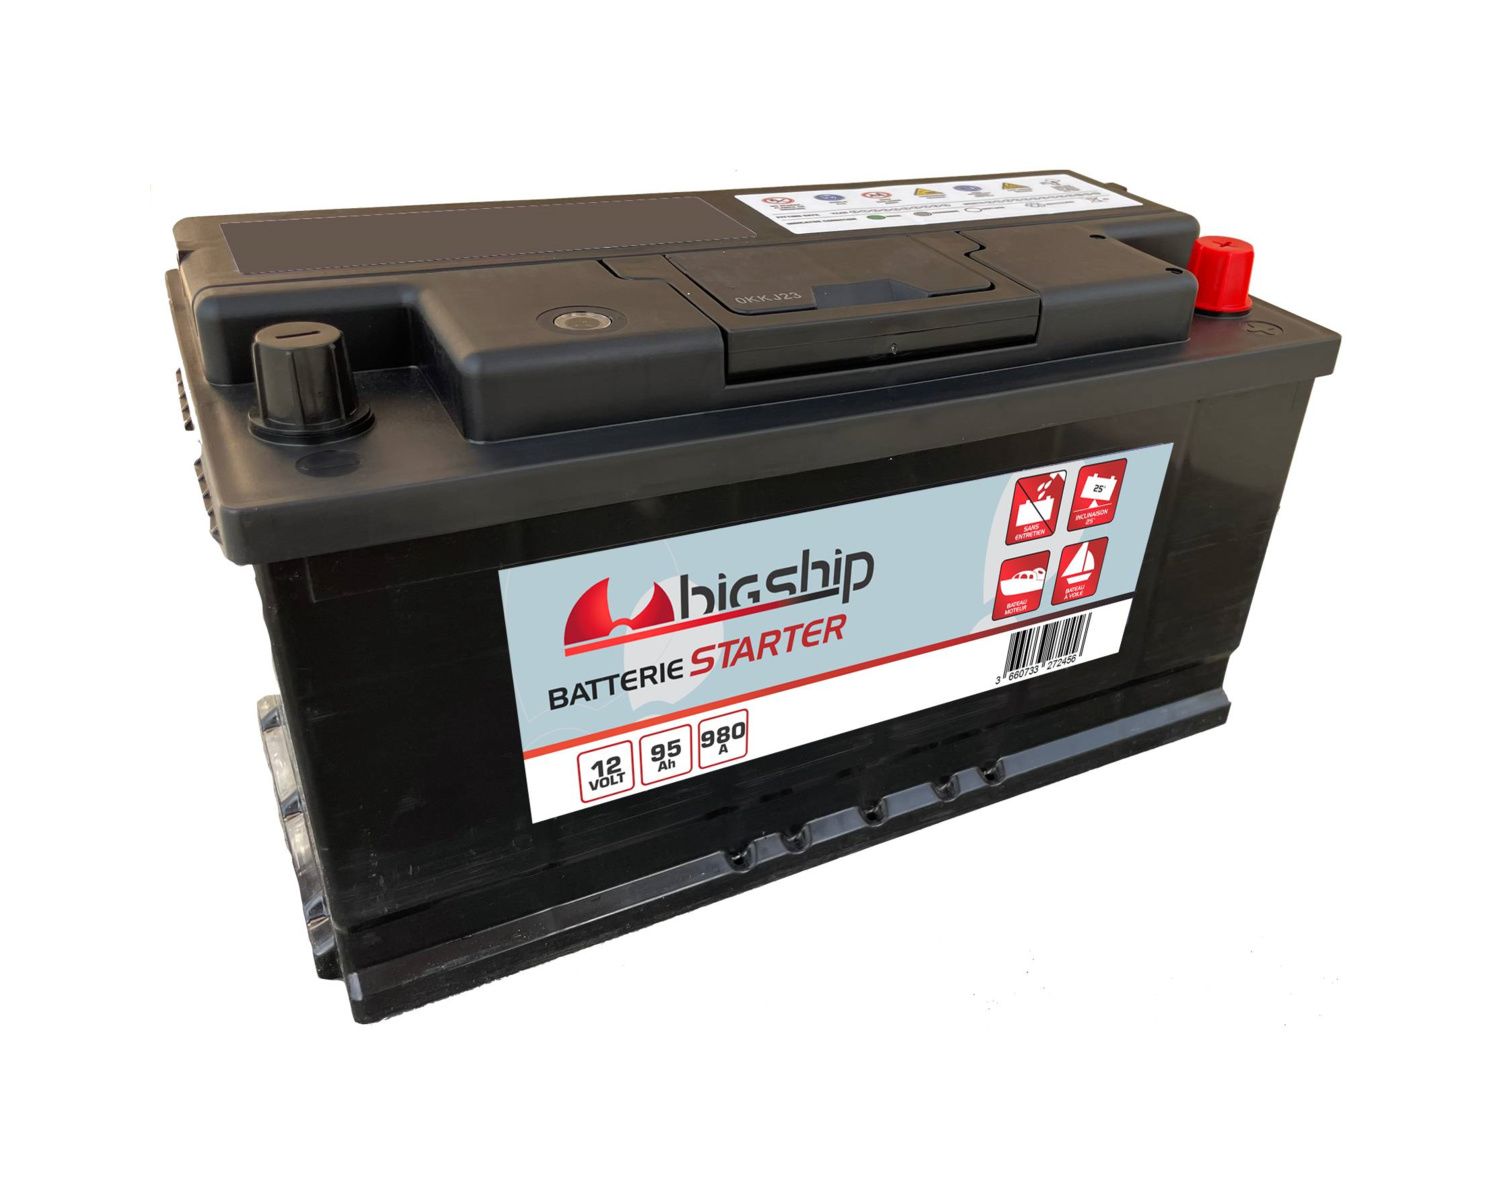 BIGSHIP Batterie starter 80Ah - Batteries - BigShip Accastillage -  Accessoires pour bateaux